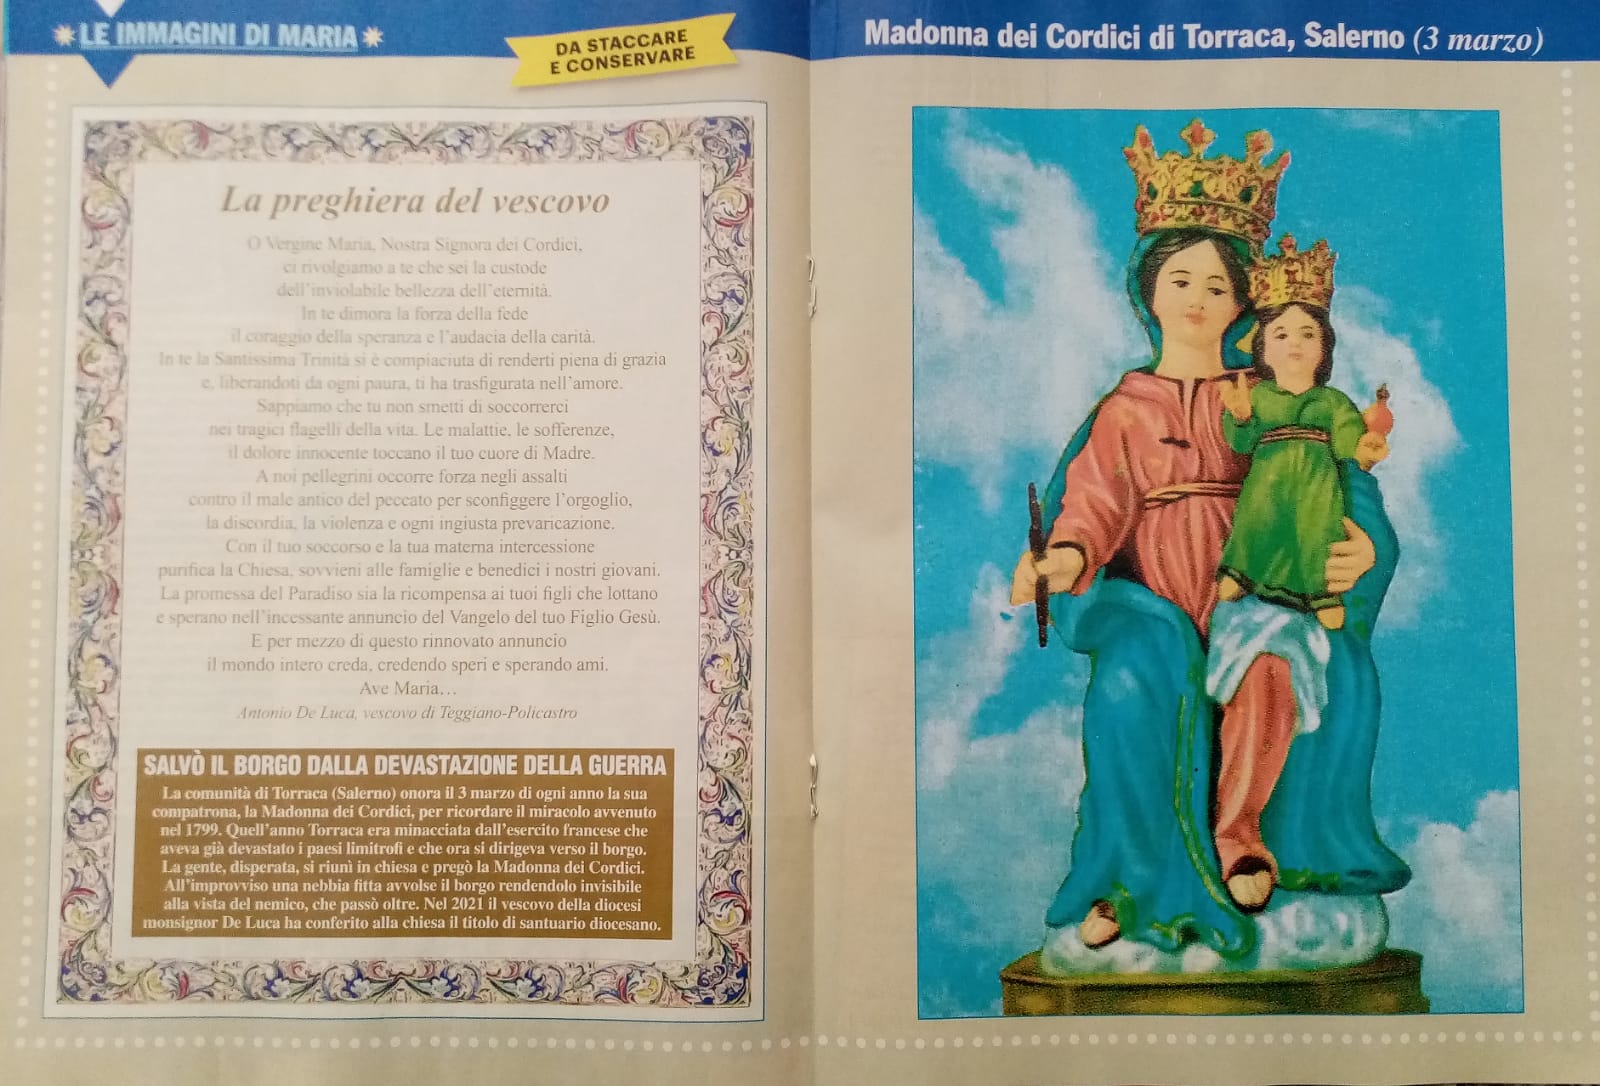 L’inserto della rivista «Maria con te» dedicato alla Madonna dei Cordici di Torraca